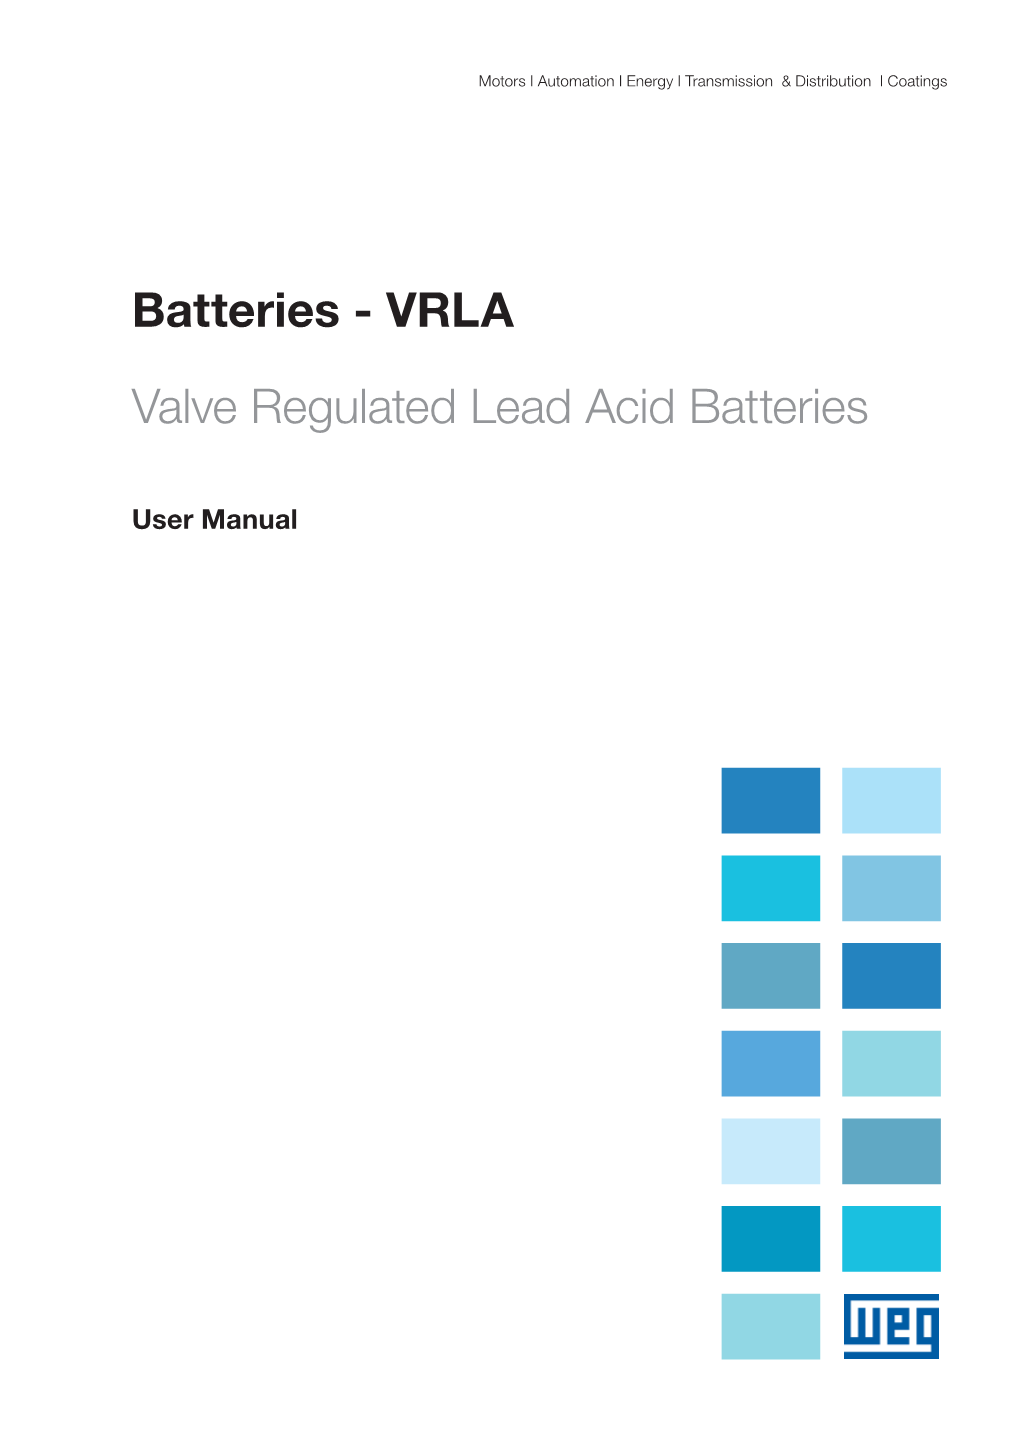 VRLA Valve Regulated Lead Acid Batteries